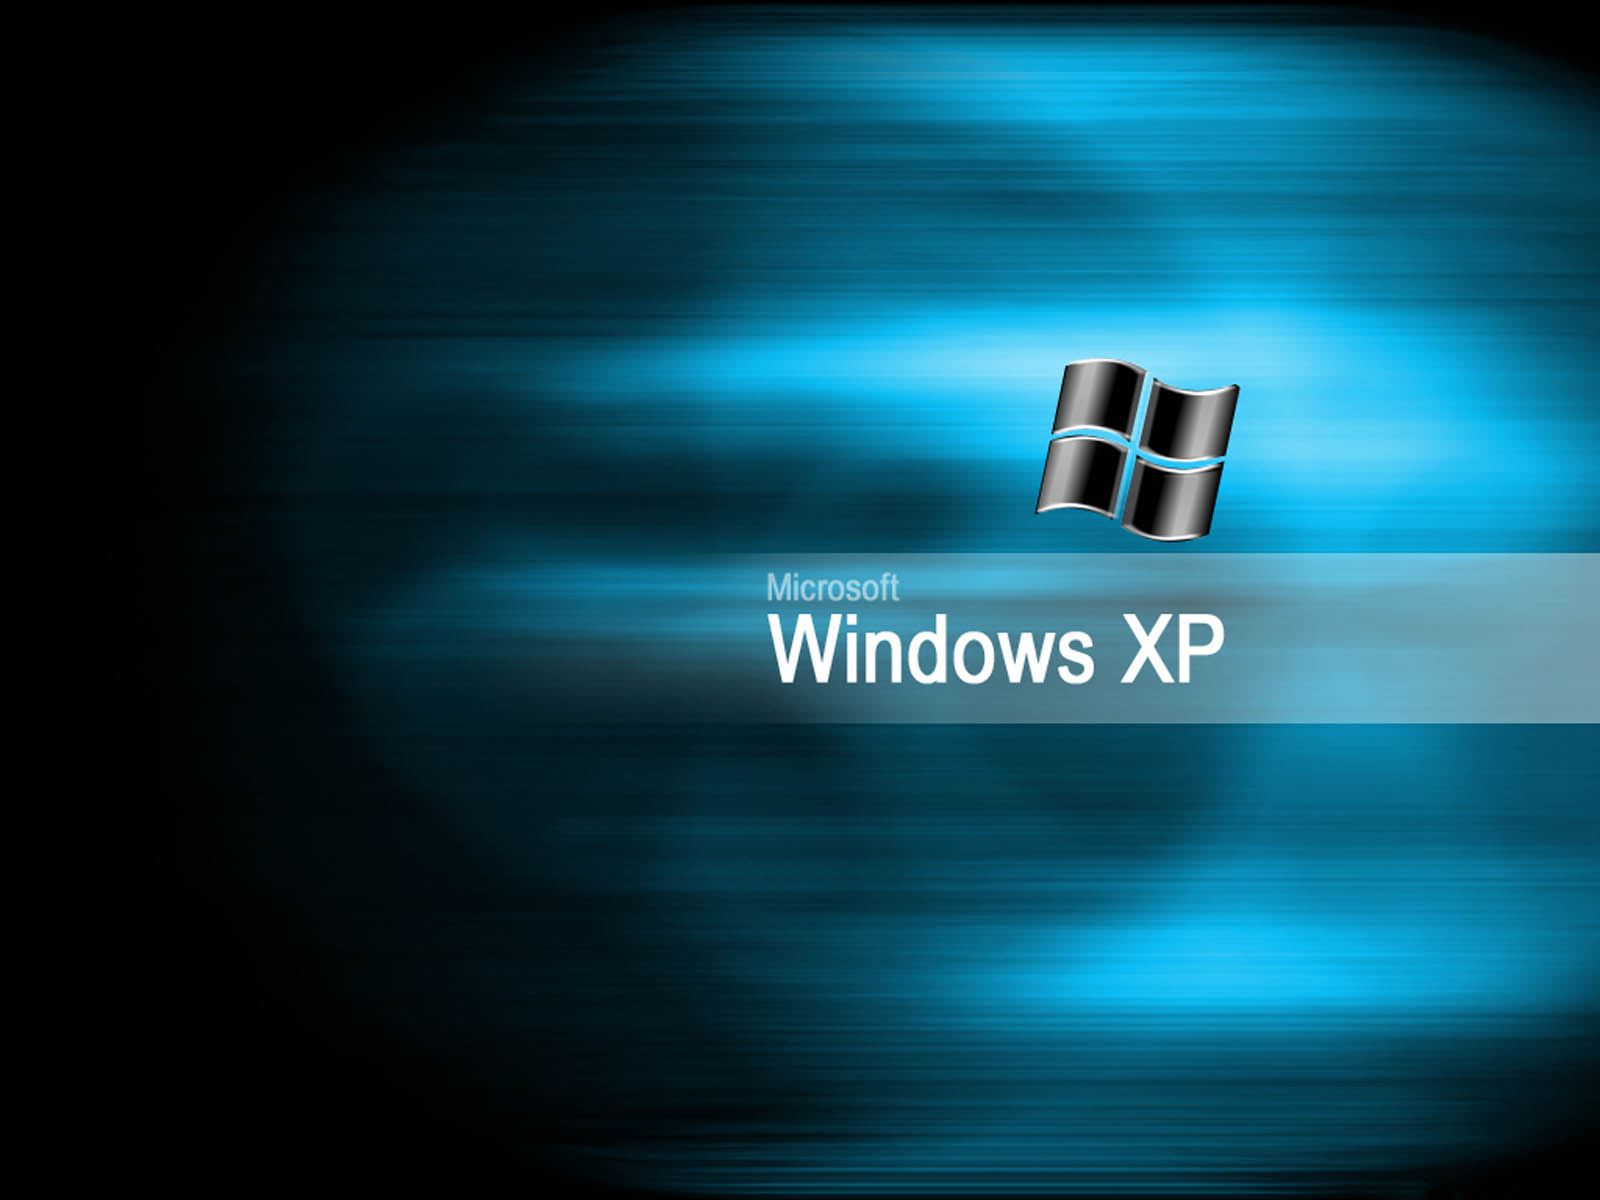 wallpapers Windows XP Desktop Wallpapers 1600x1200